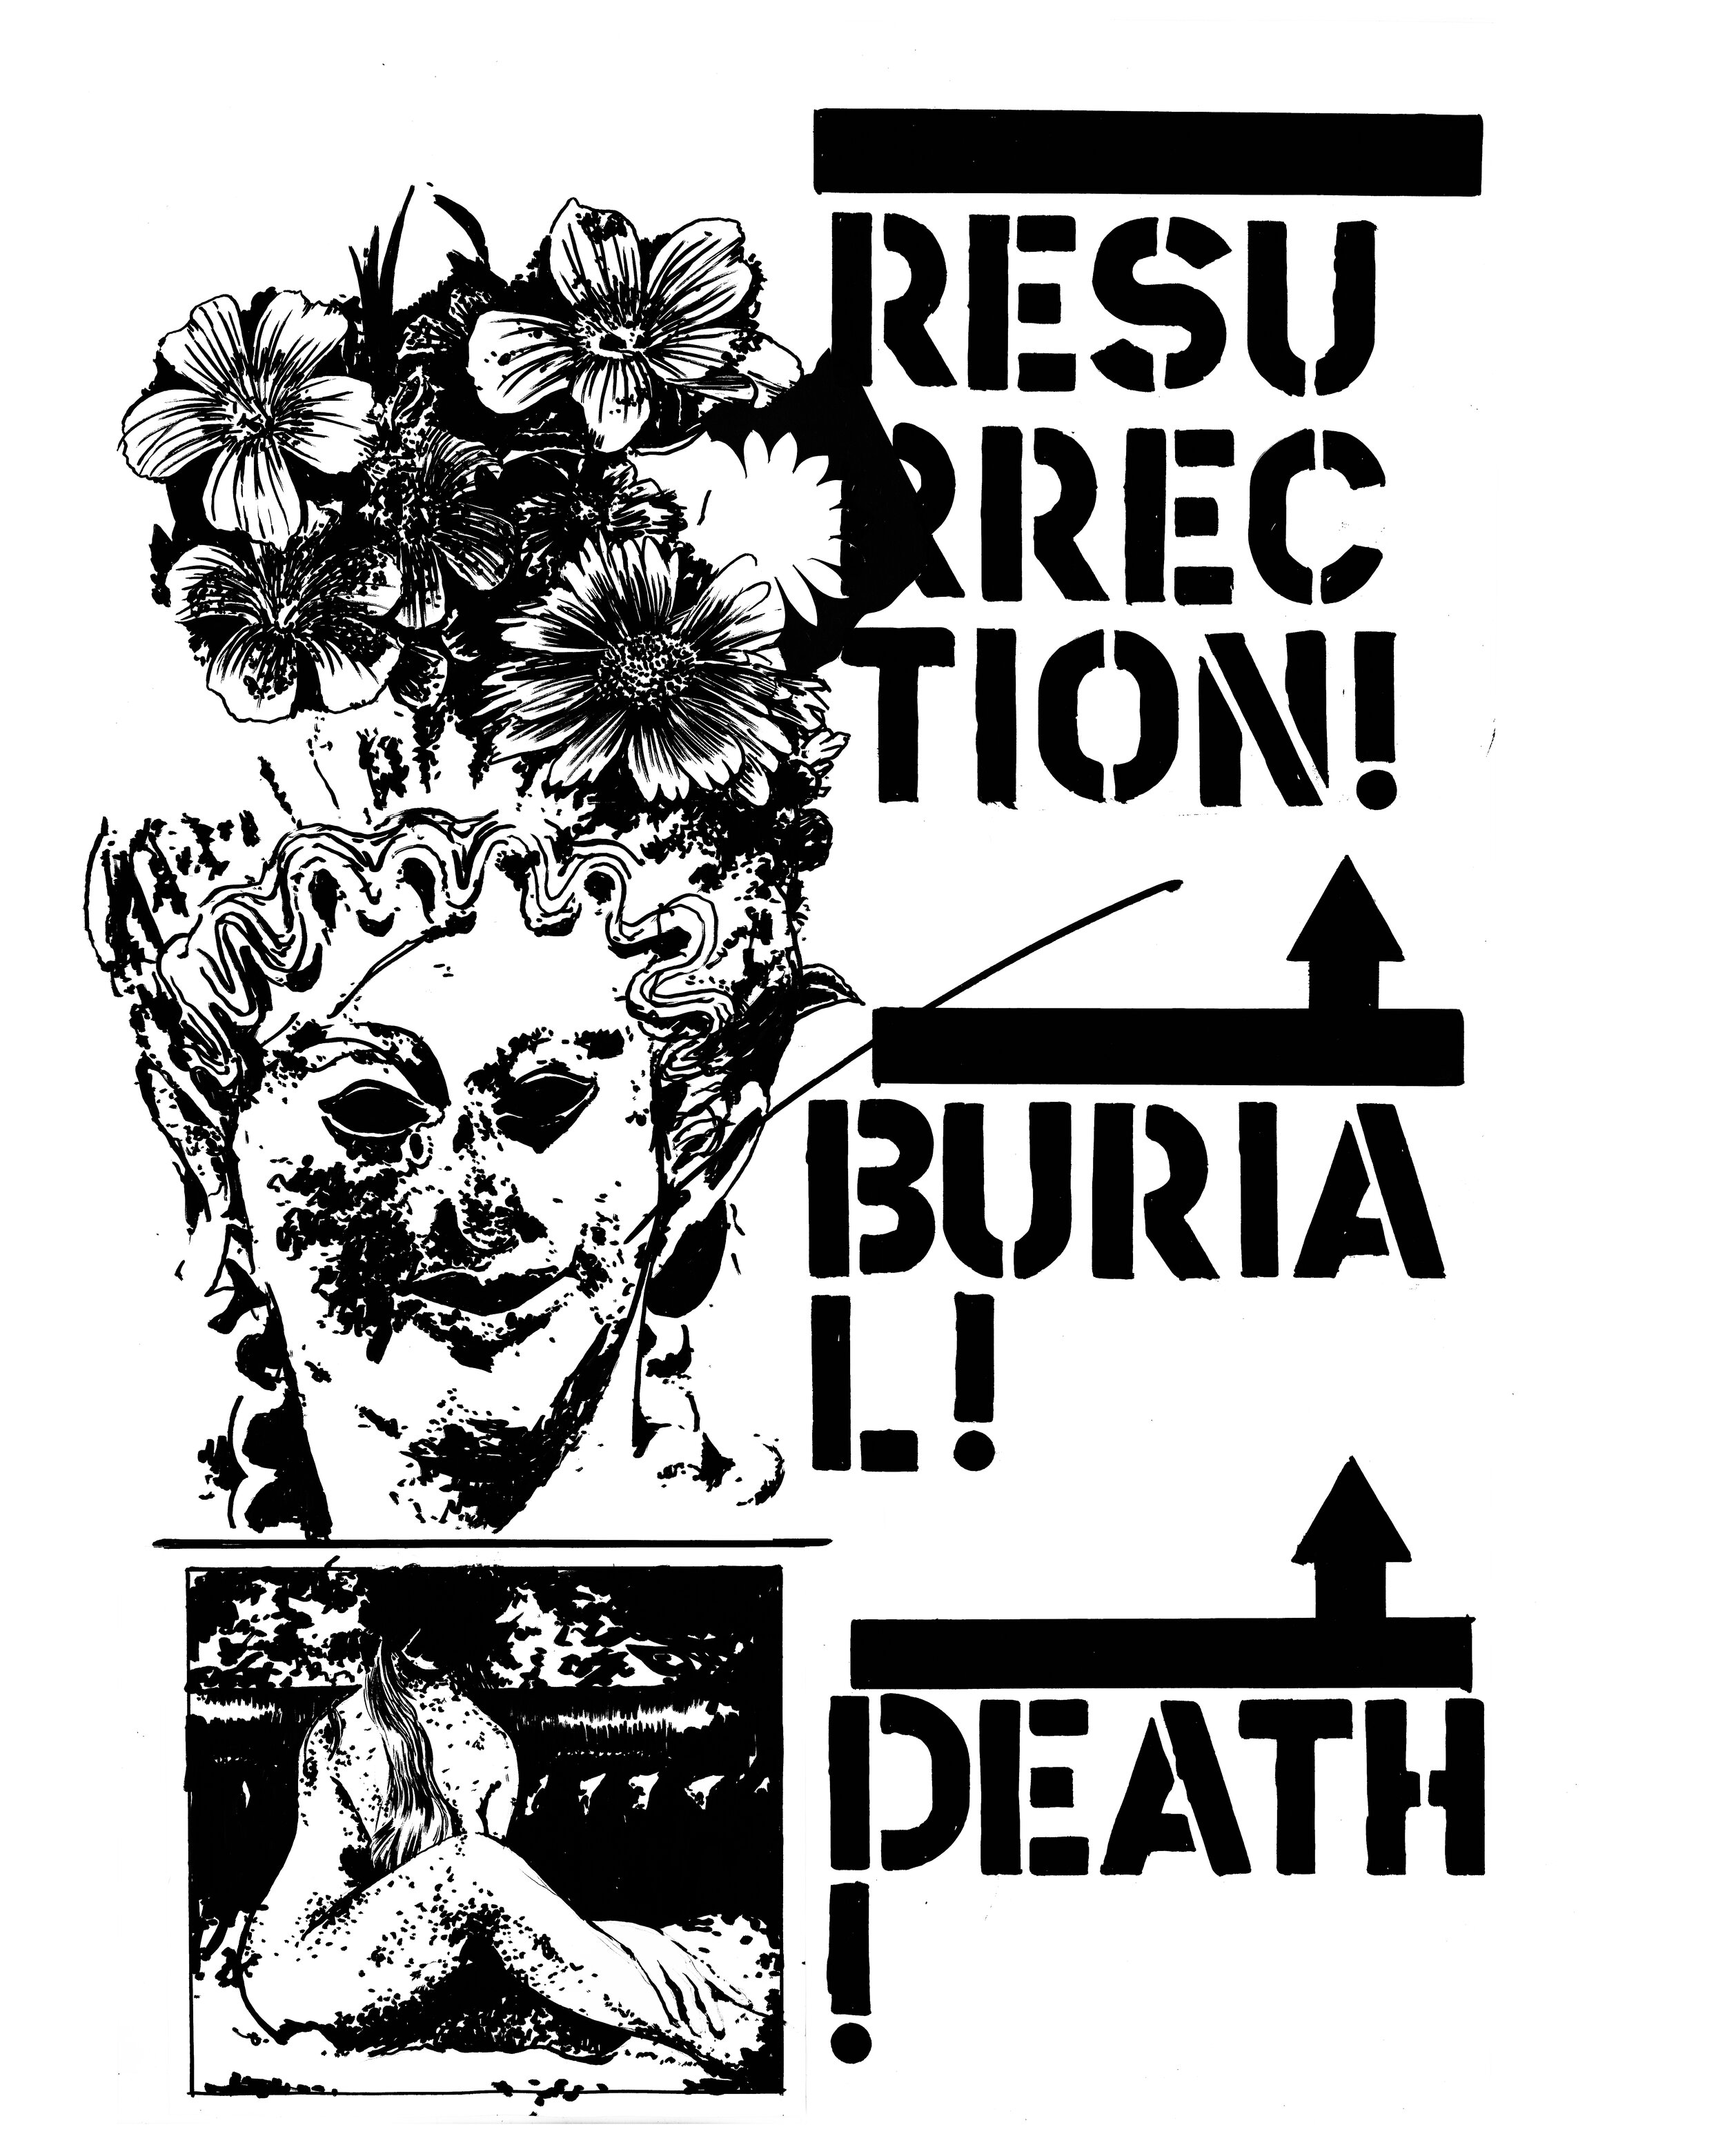 "Death! Burial! Resurrection!"